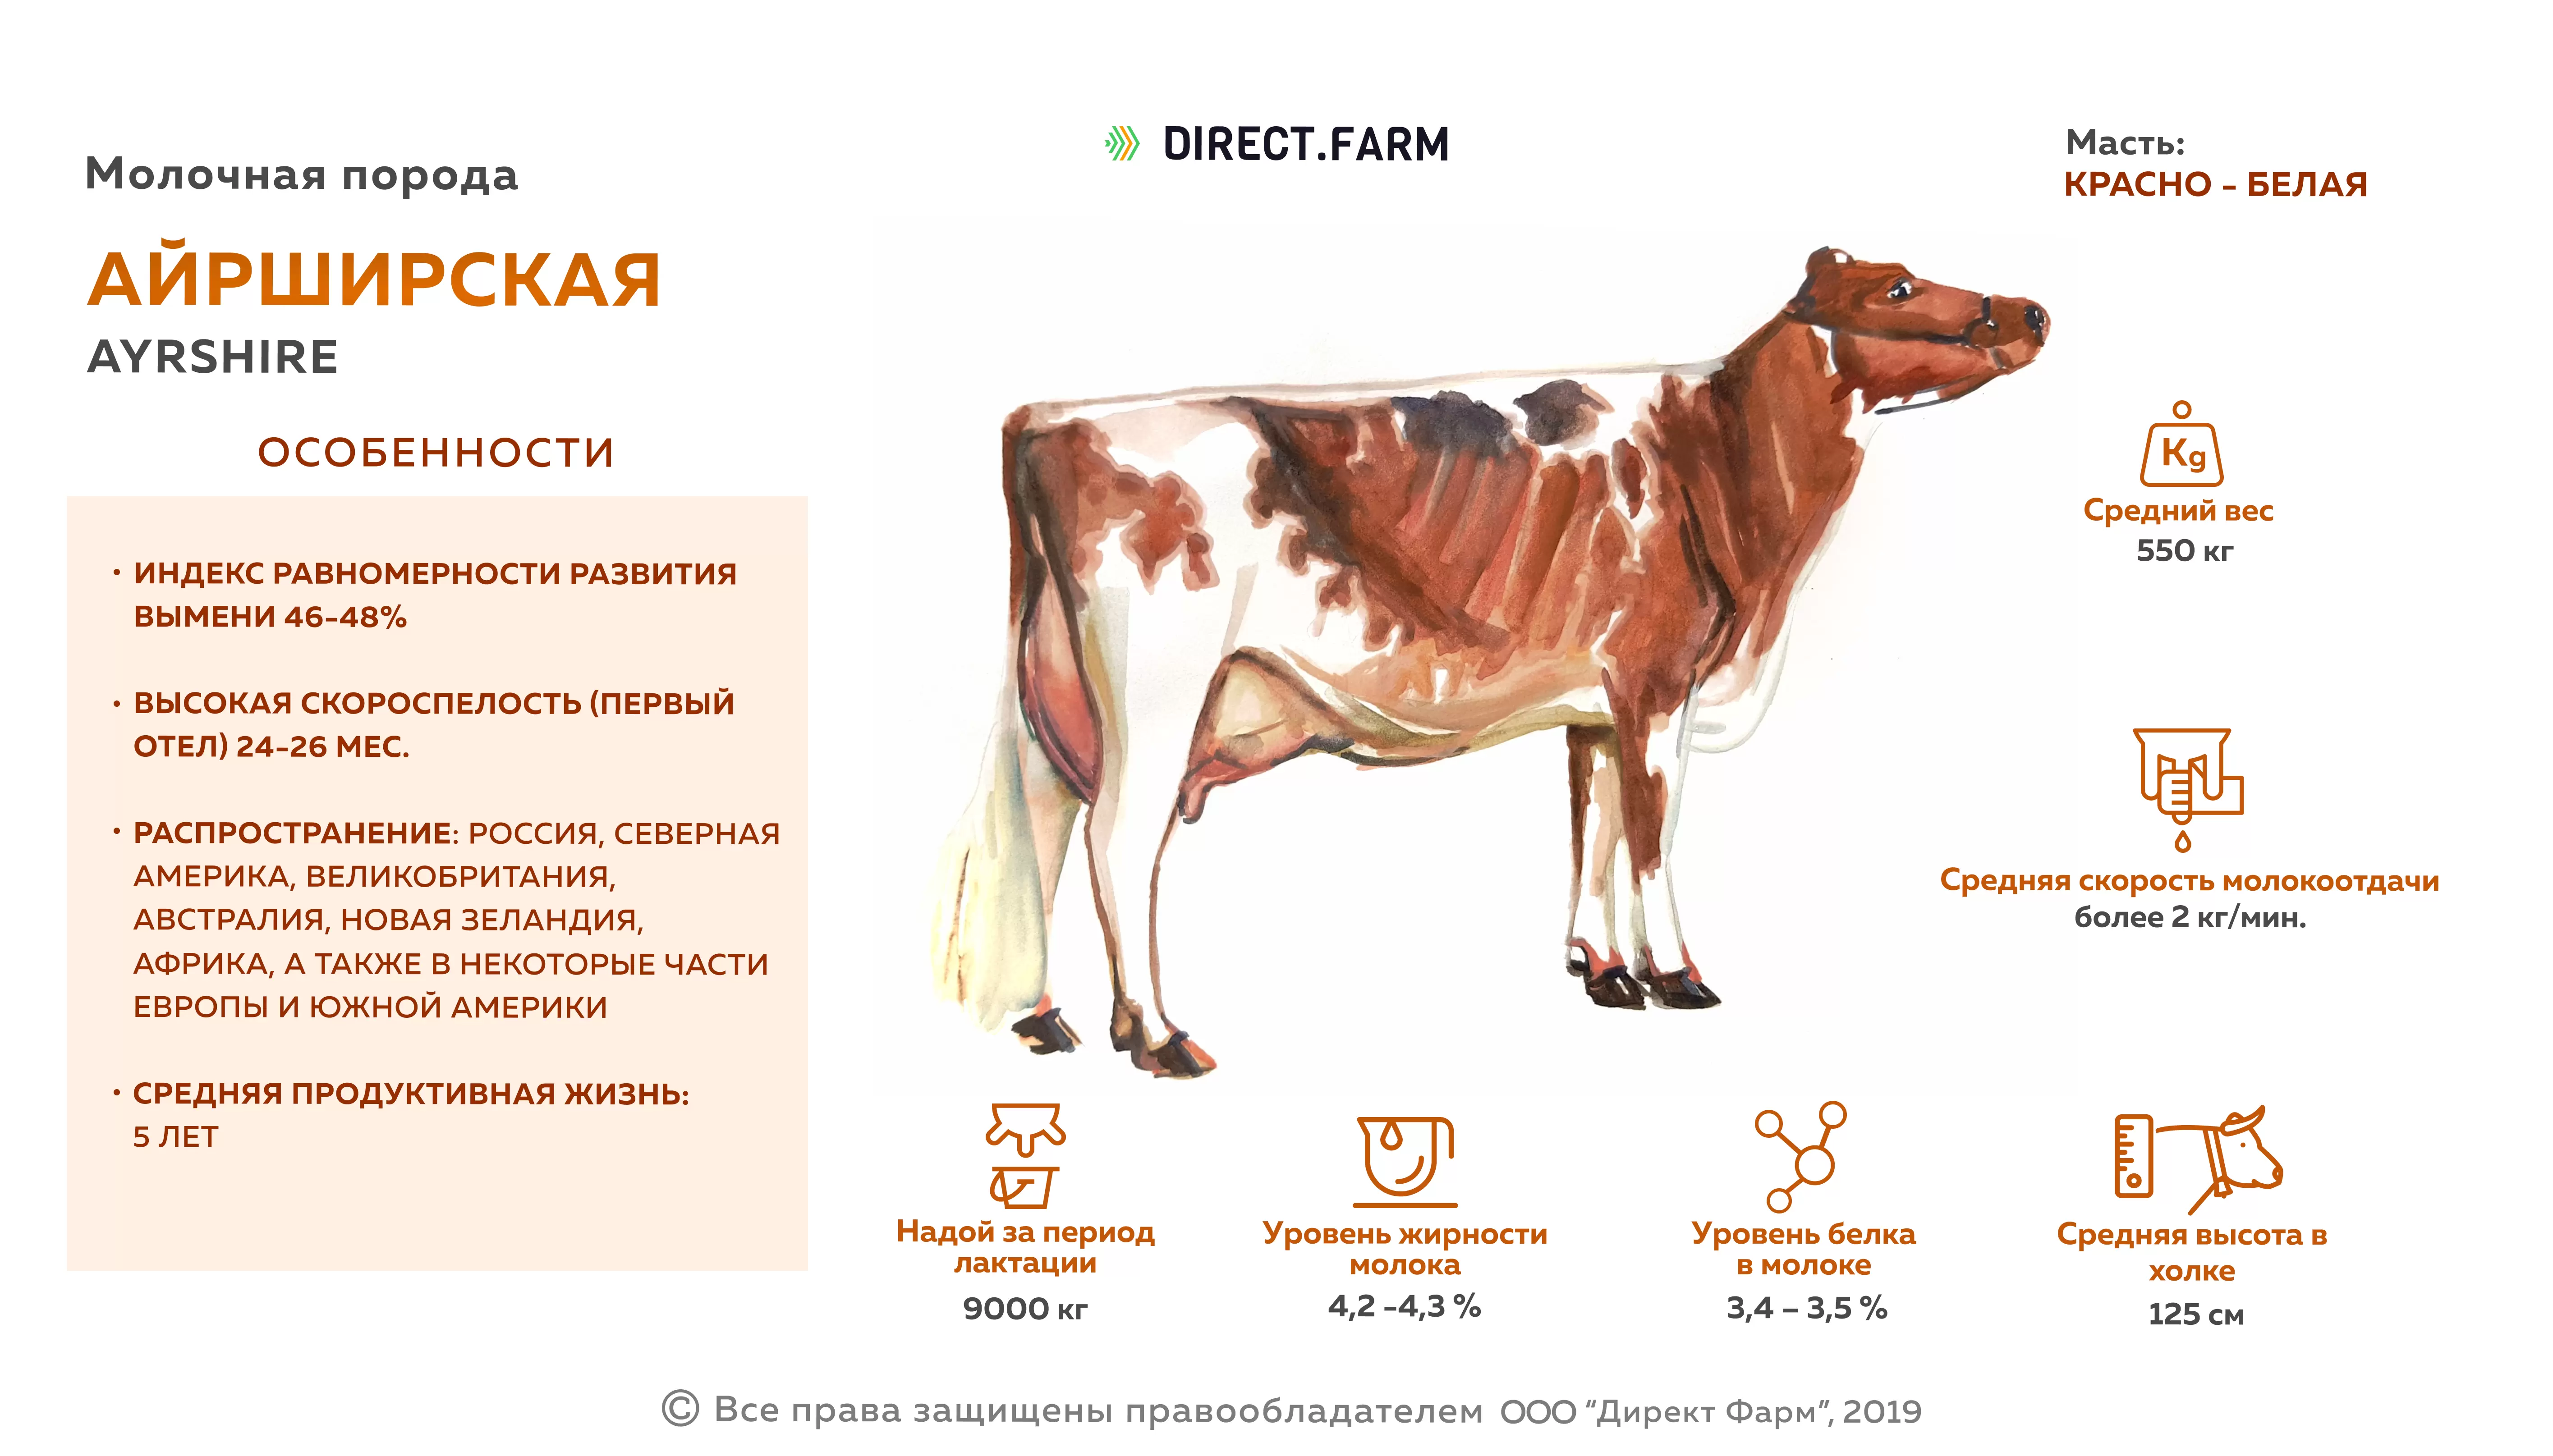 20 коров сколько молока. Характеристика коров айрширской породы. Молочная продуктивность айрширской породы коров. Корова айрширской породы параметры. Стандарт породы симментальской породы коров.